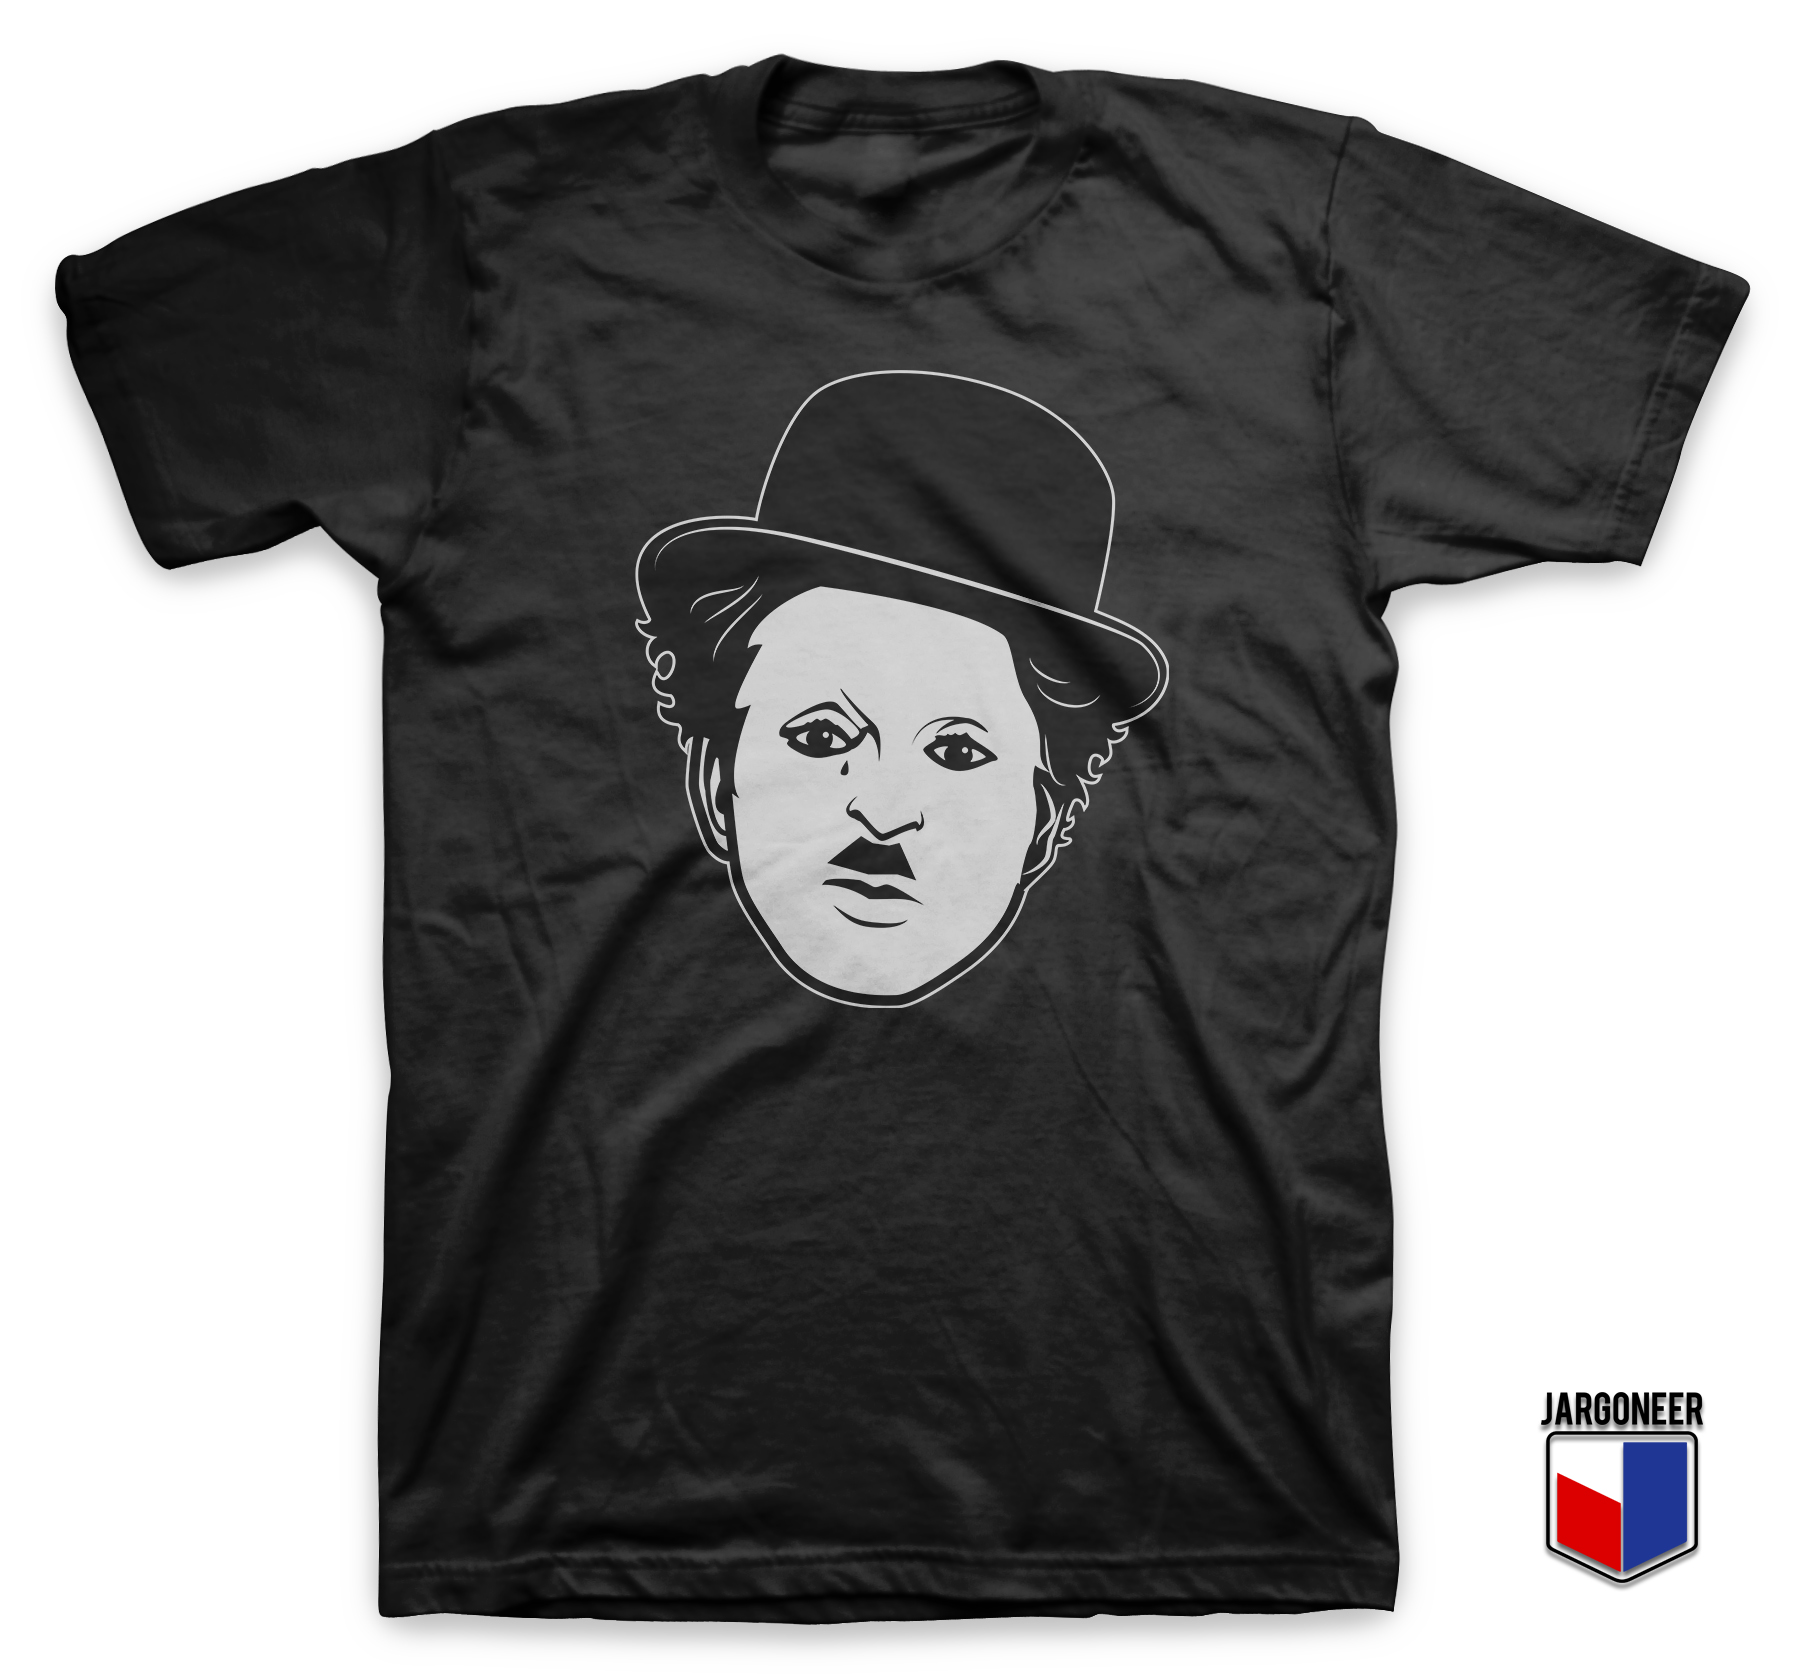 Charlie Chaplin Black T Shirt - Shop Unique Graphic Cool Shirt Designs